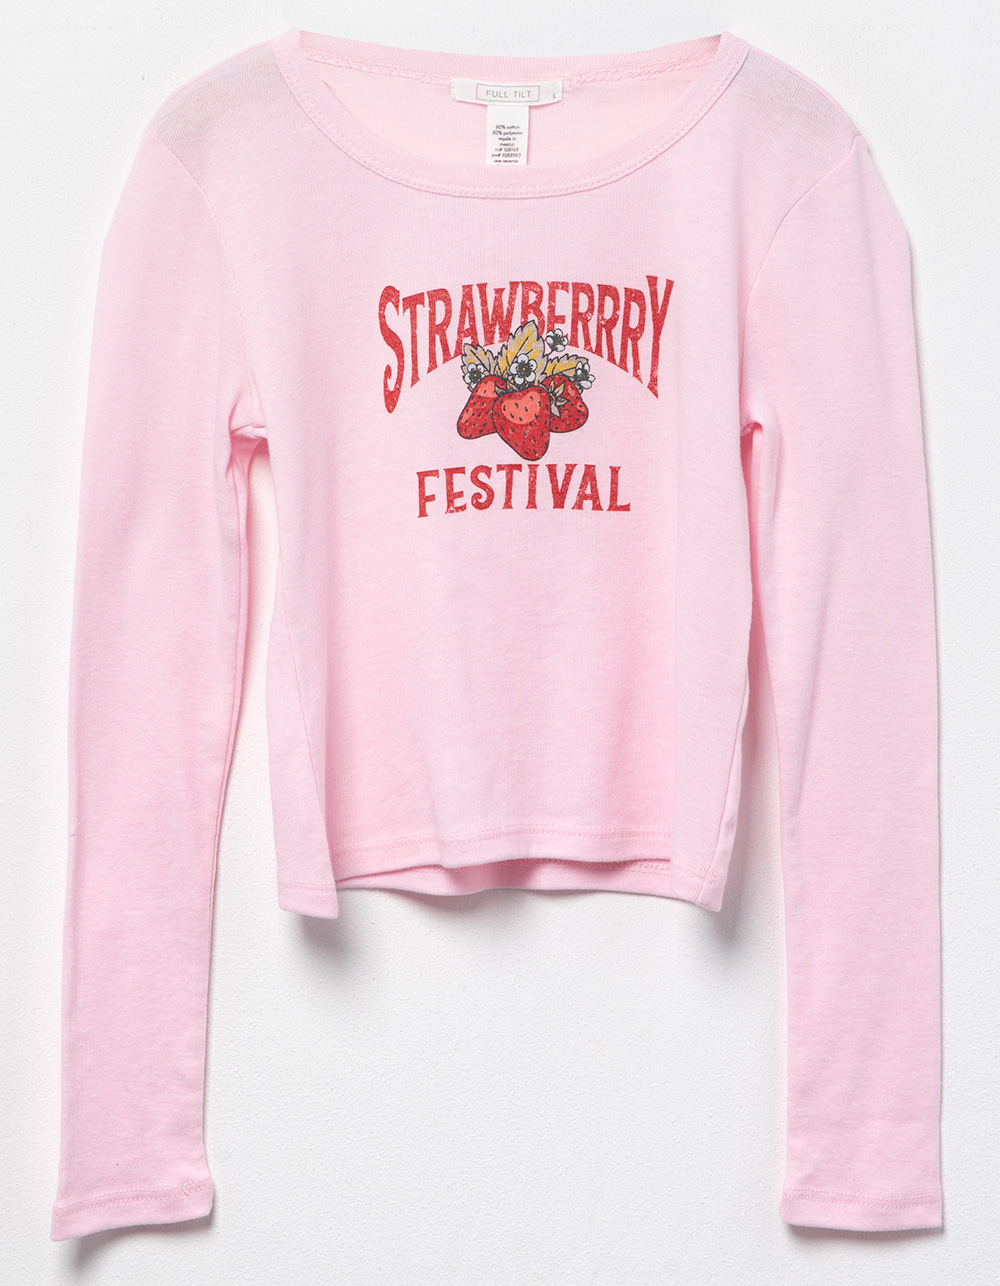 FULL TILT Strawberry Festival Girls Long Baby Tee - PINK LIGHT Tillys Sleeve 